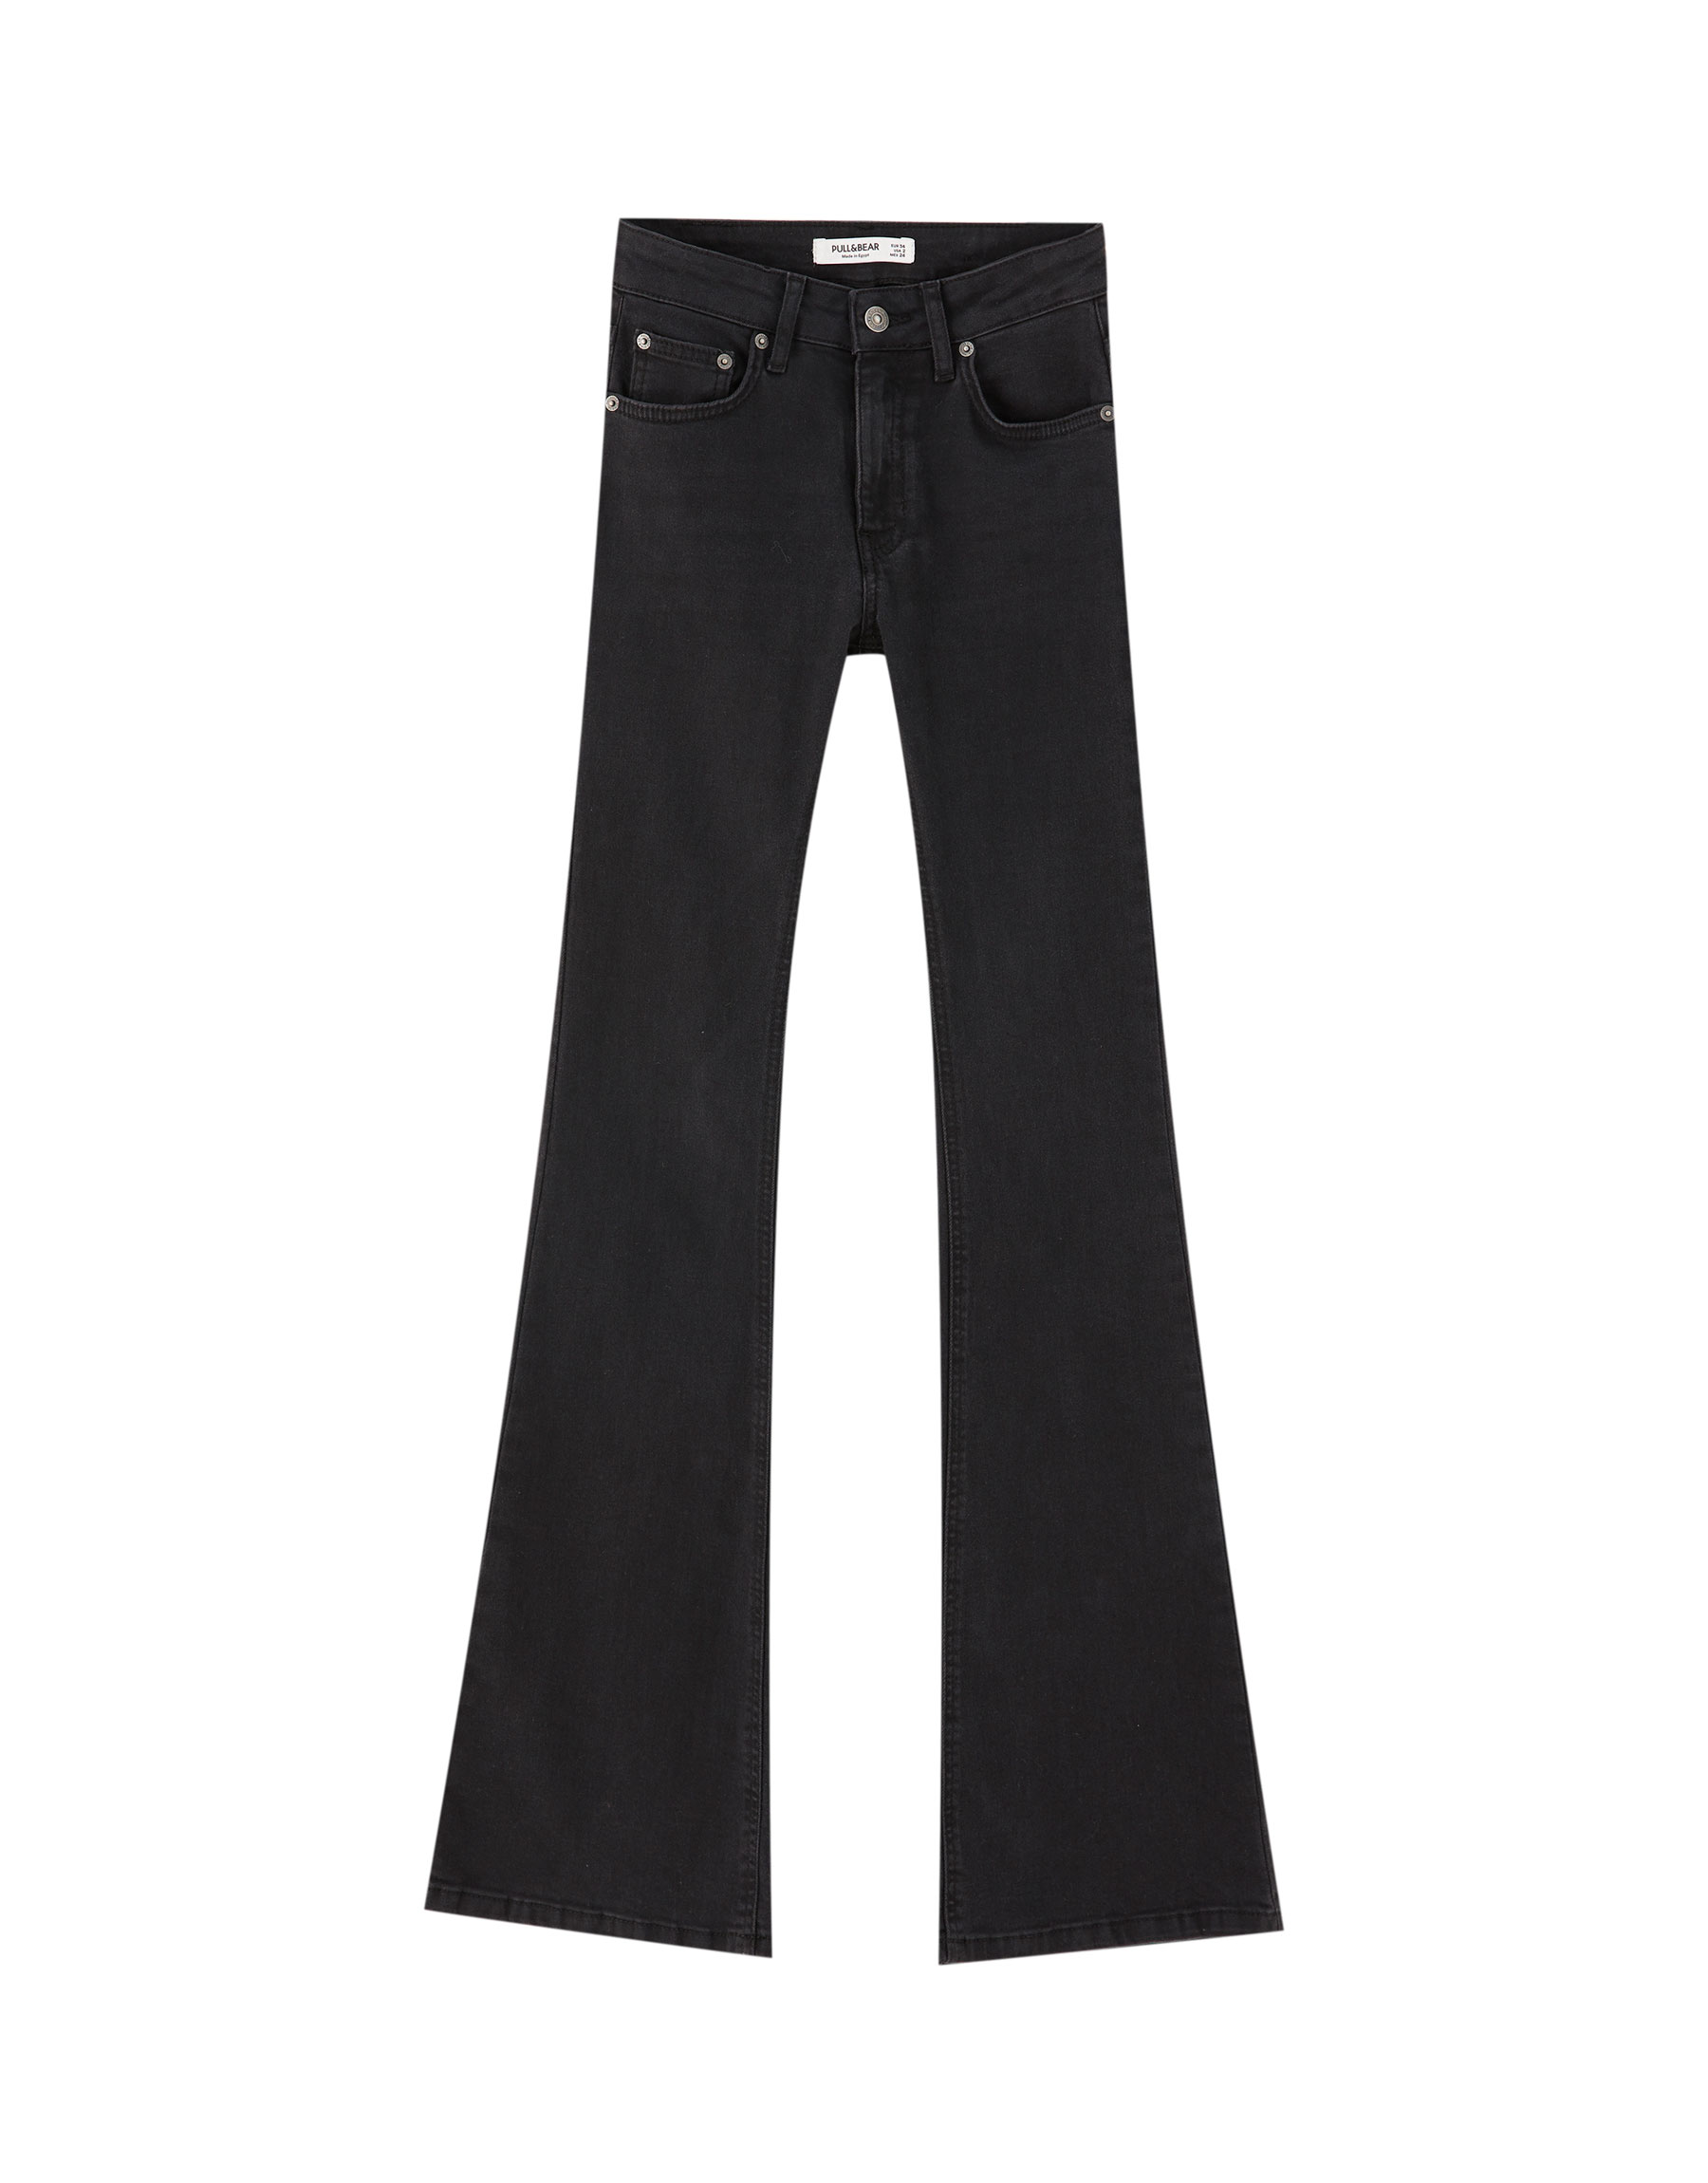 ЧЕРНЫЙ Расклешенные джинсы со средней посадкой Pull & Bear